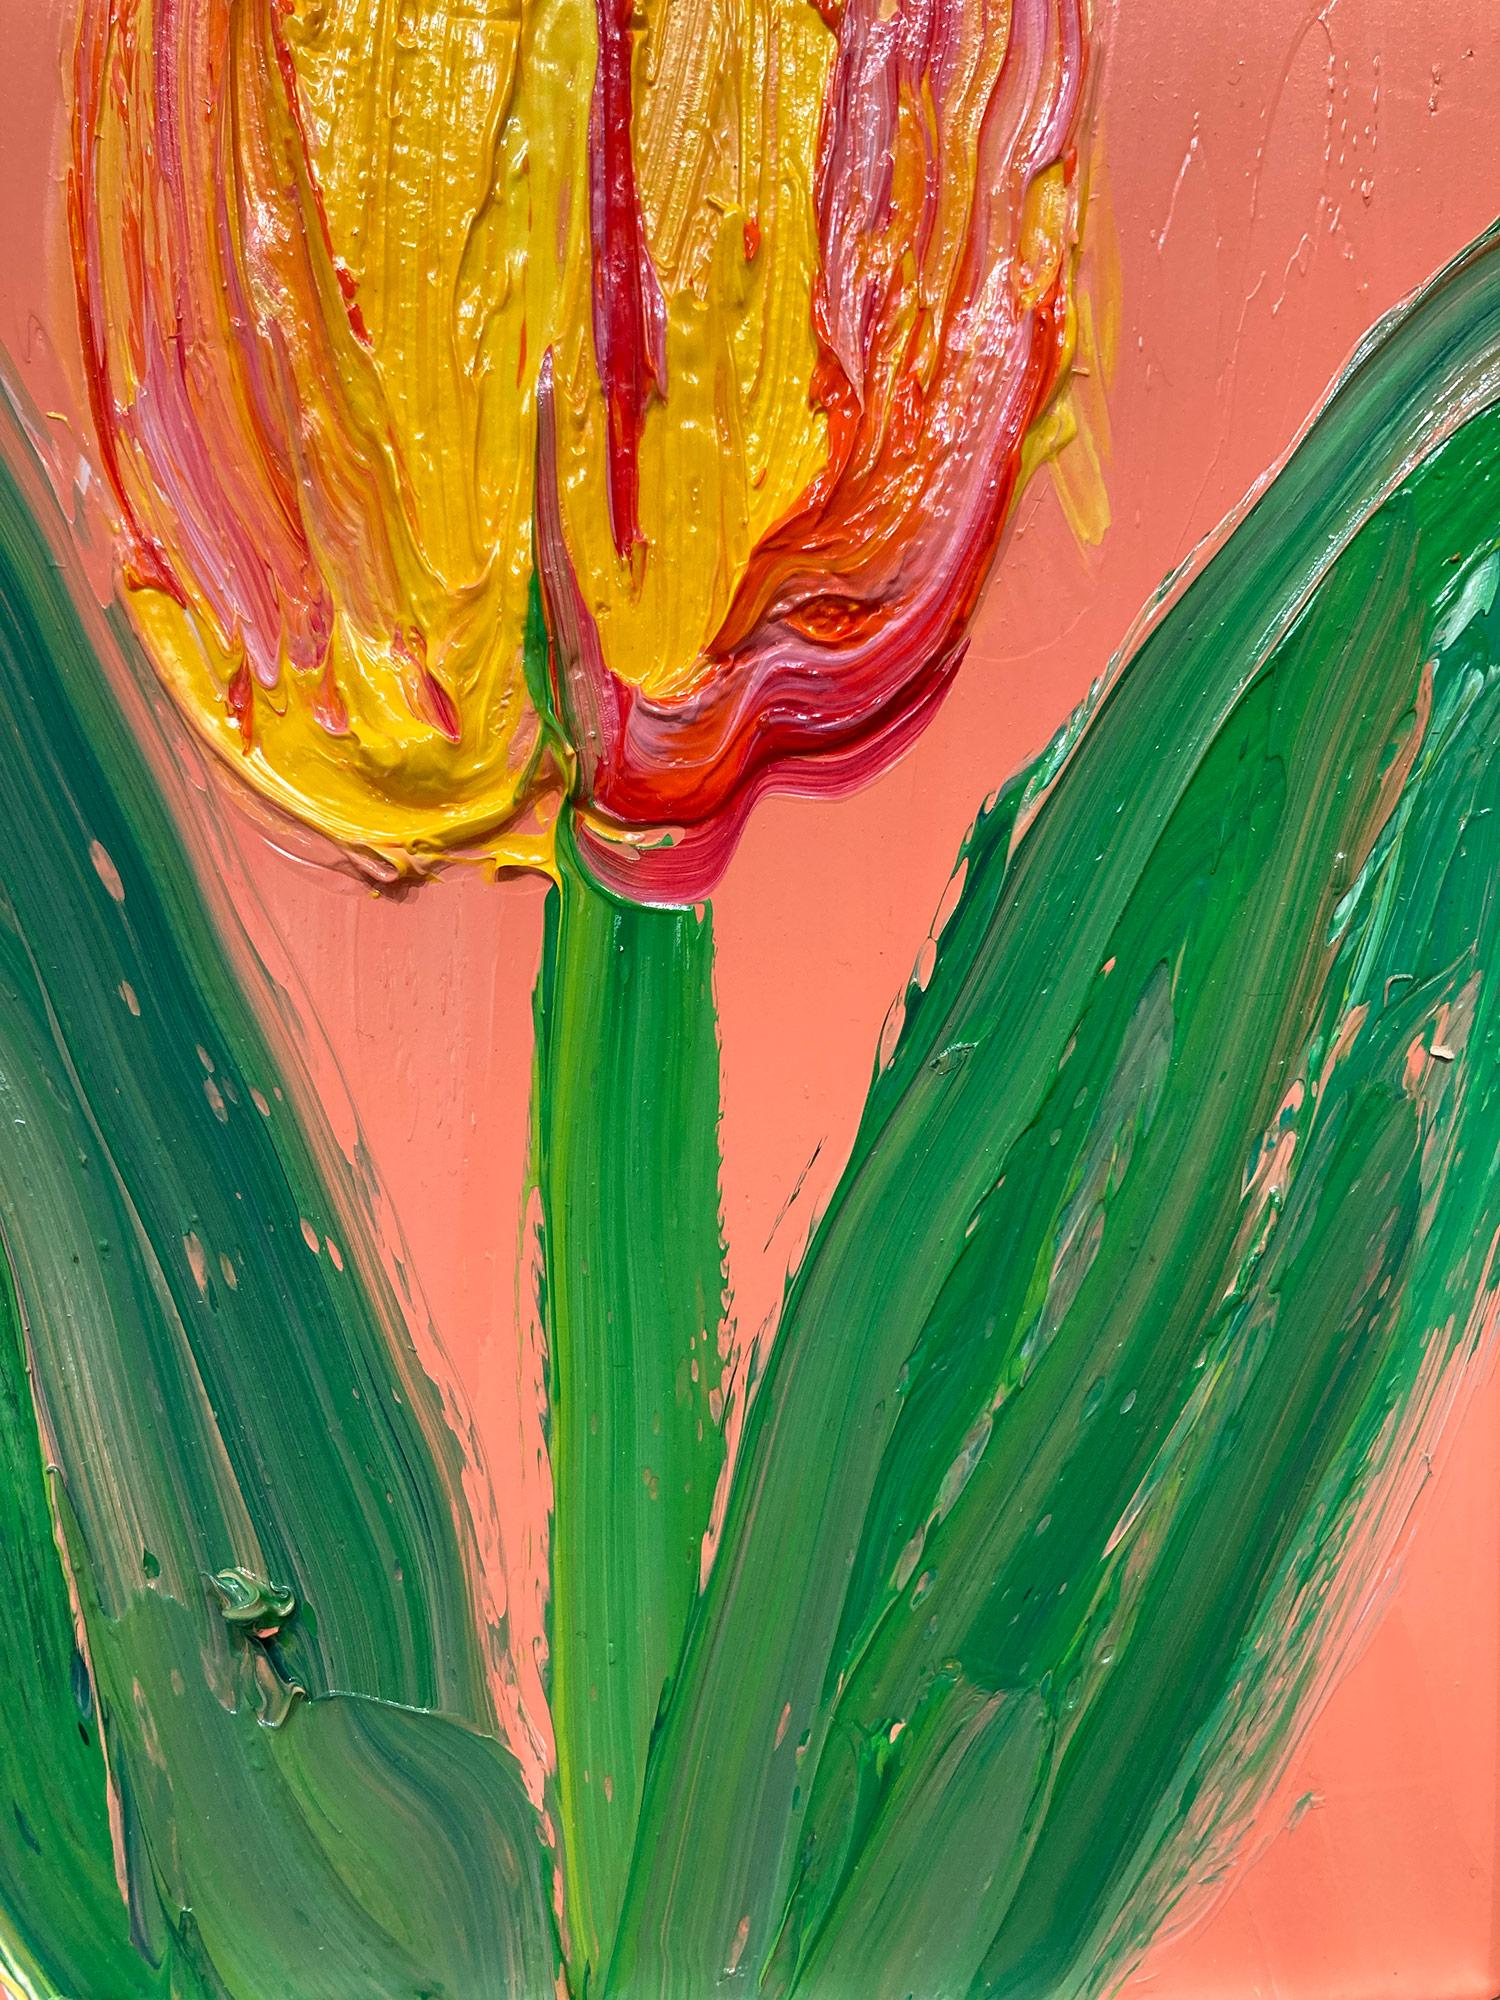 Une magnifique composition de l'une des plus récentes séries de Slonem, Tulipes. Cette pièce représente une figure gestuelle d'un orgue et d'une tulipe jaune sur un fond orange pêche avec une utilisation épaisse de la peinture. Elle est présentée